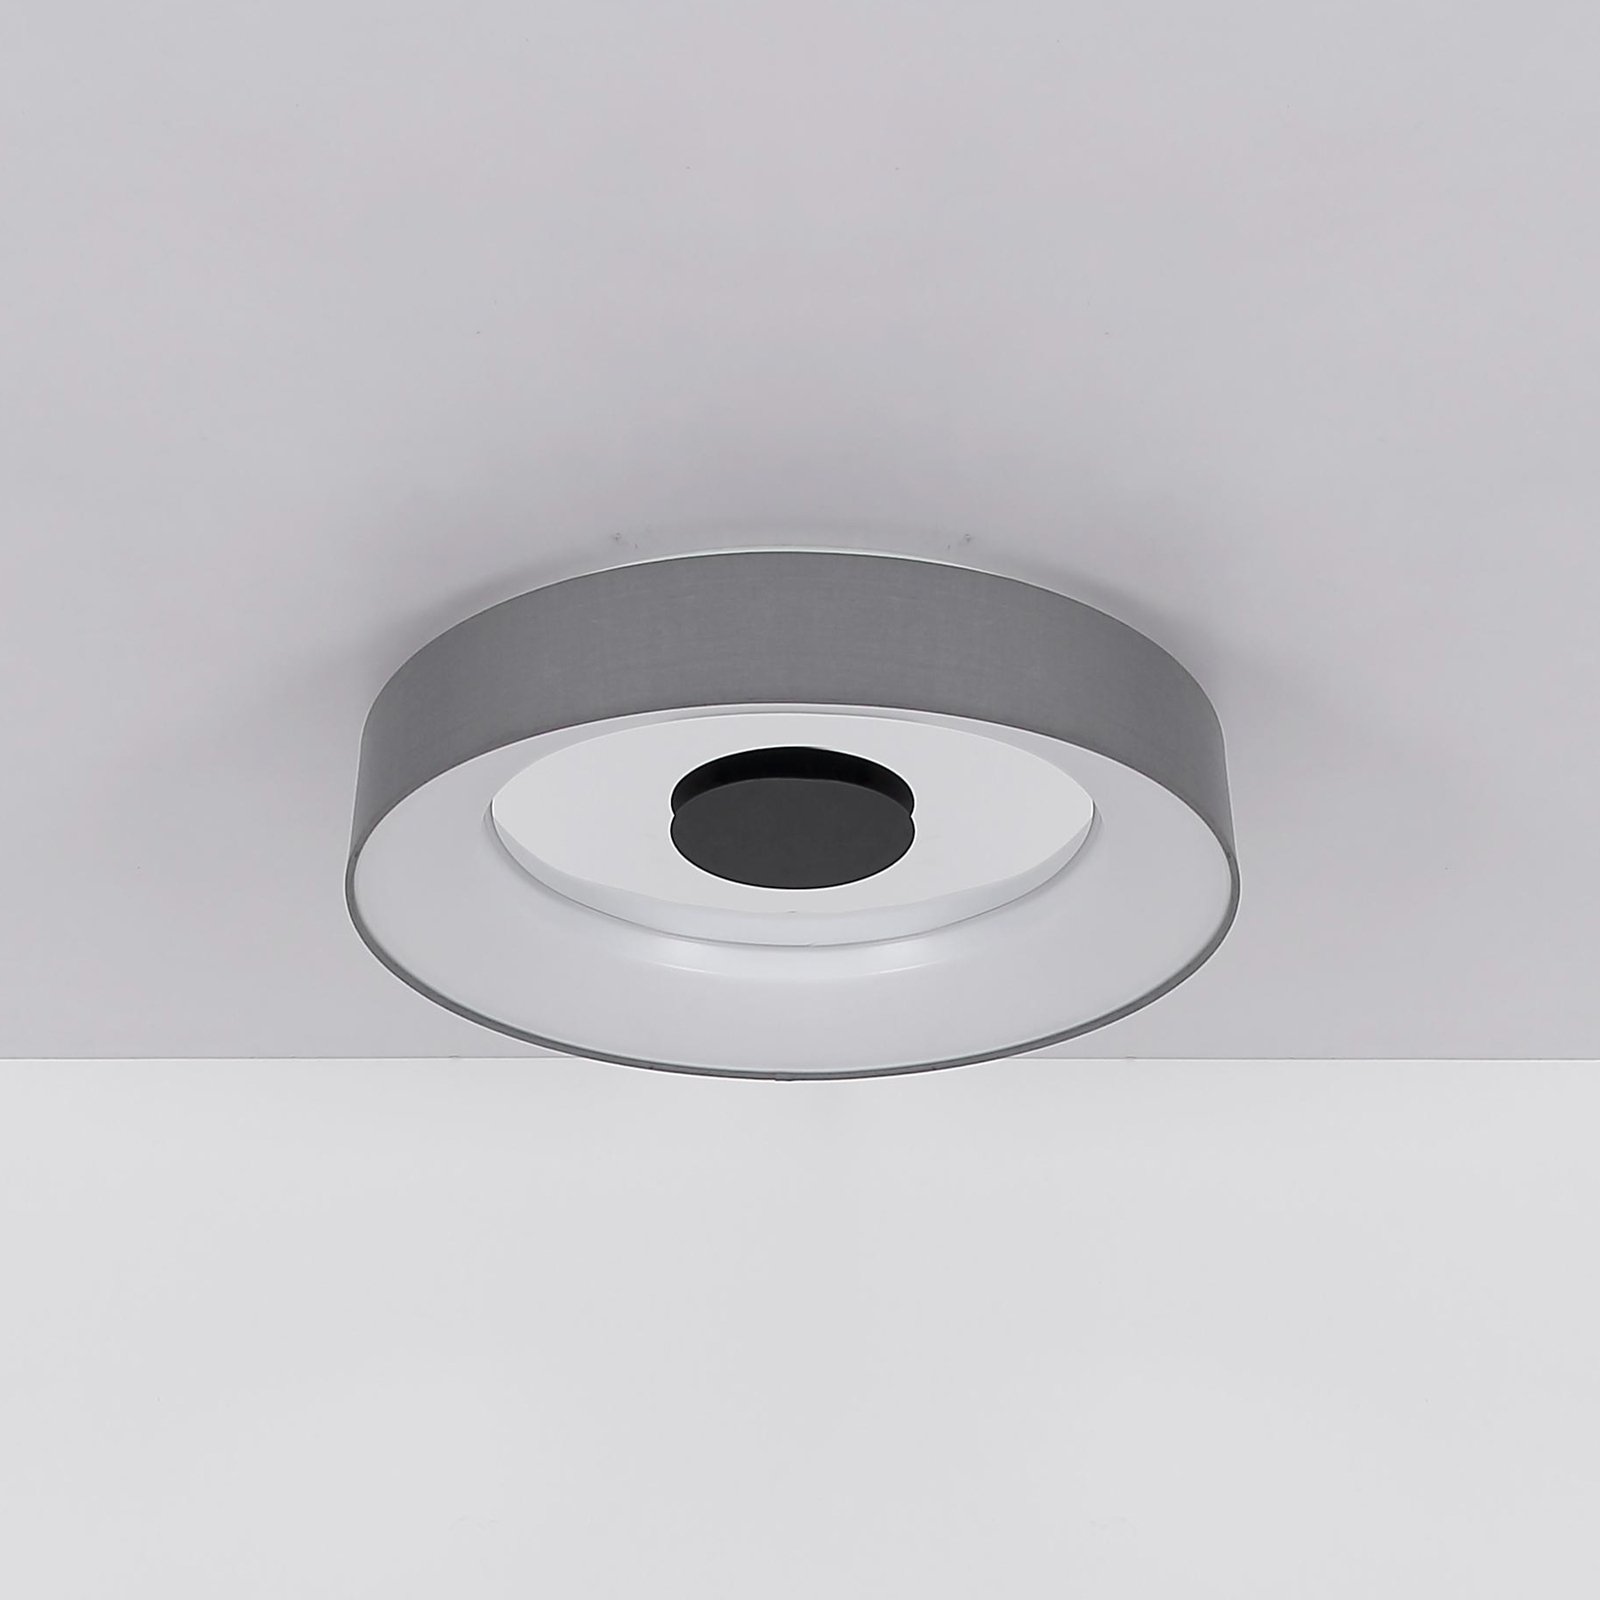 Smart LED-taklampe Terpsa, hvit/grå, Ø 46,8 cm, tekstil